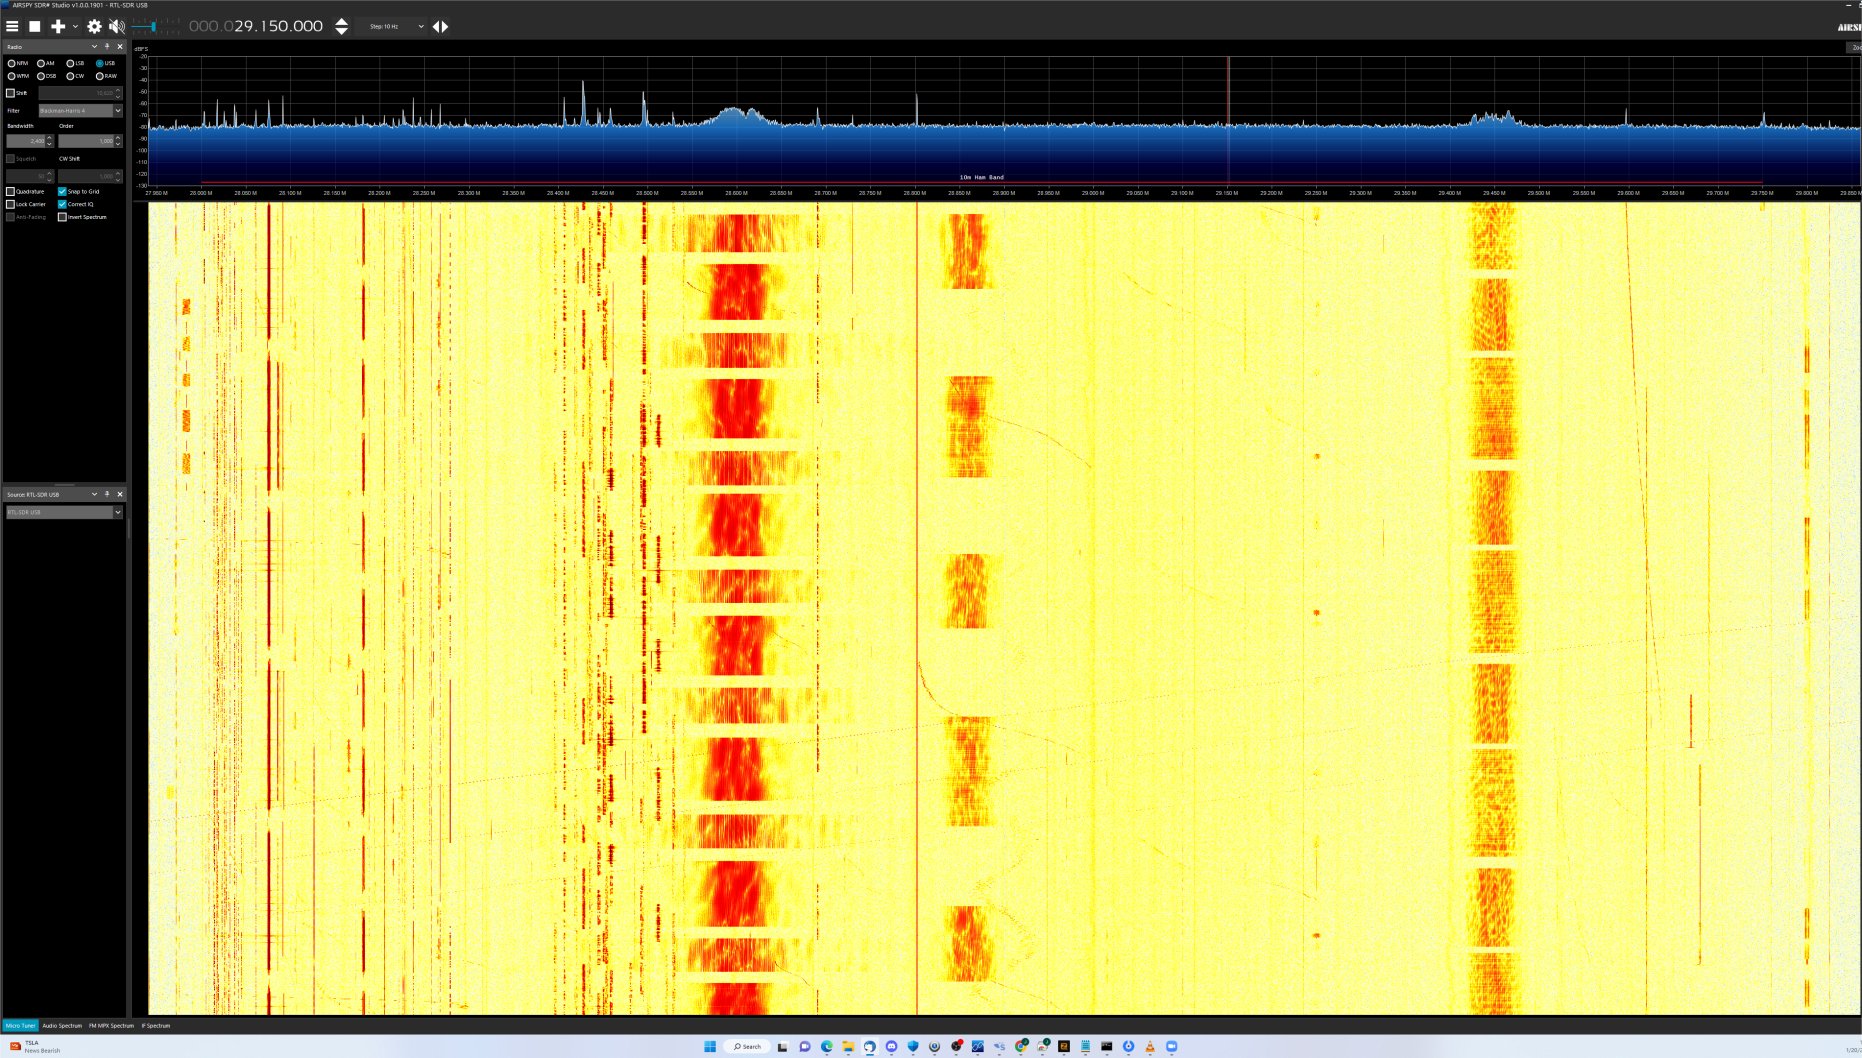 Ten meter widwband signals_5a.jpg